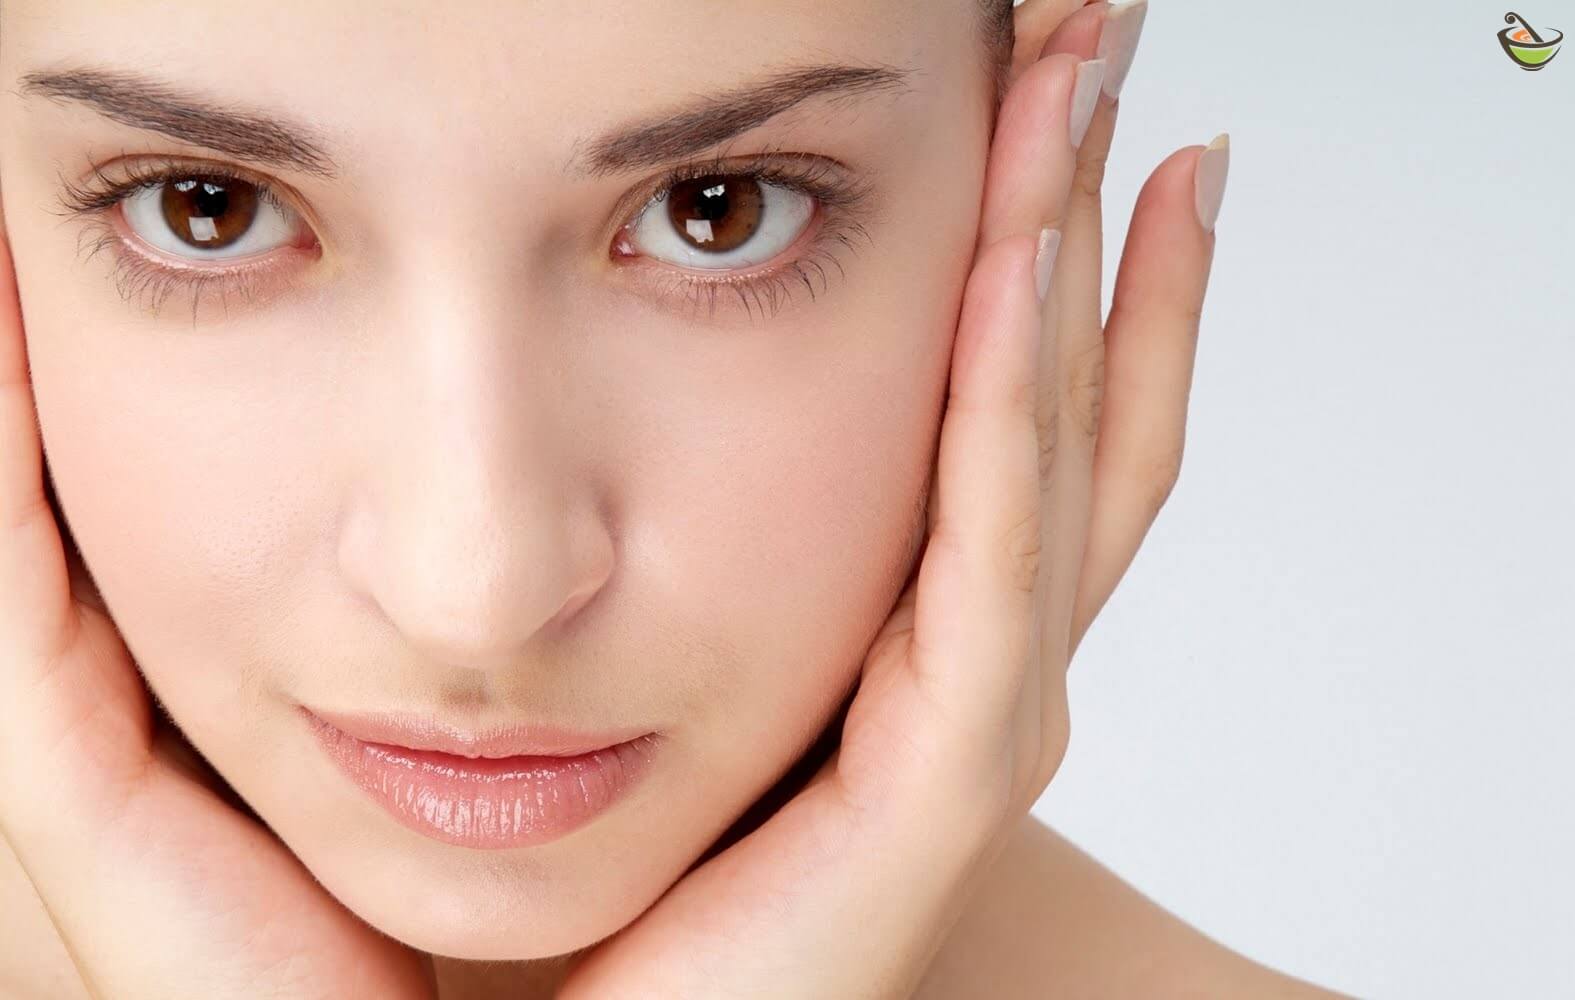 وصفات طبيعية لتبييض الوجه ونصائح للحفاظ على نضارة الوجه